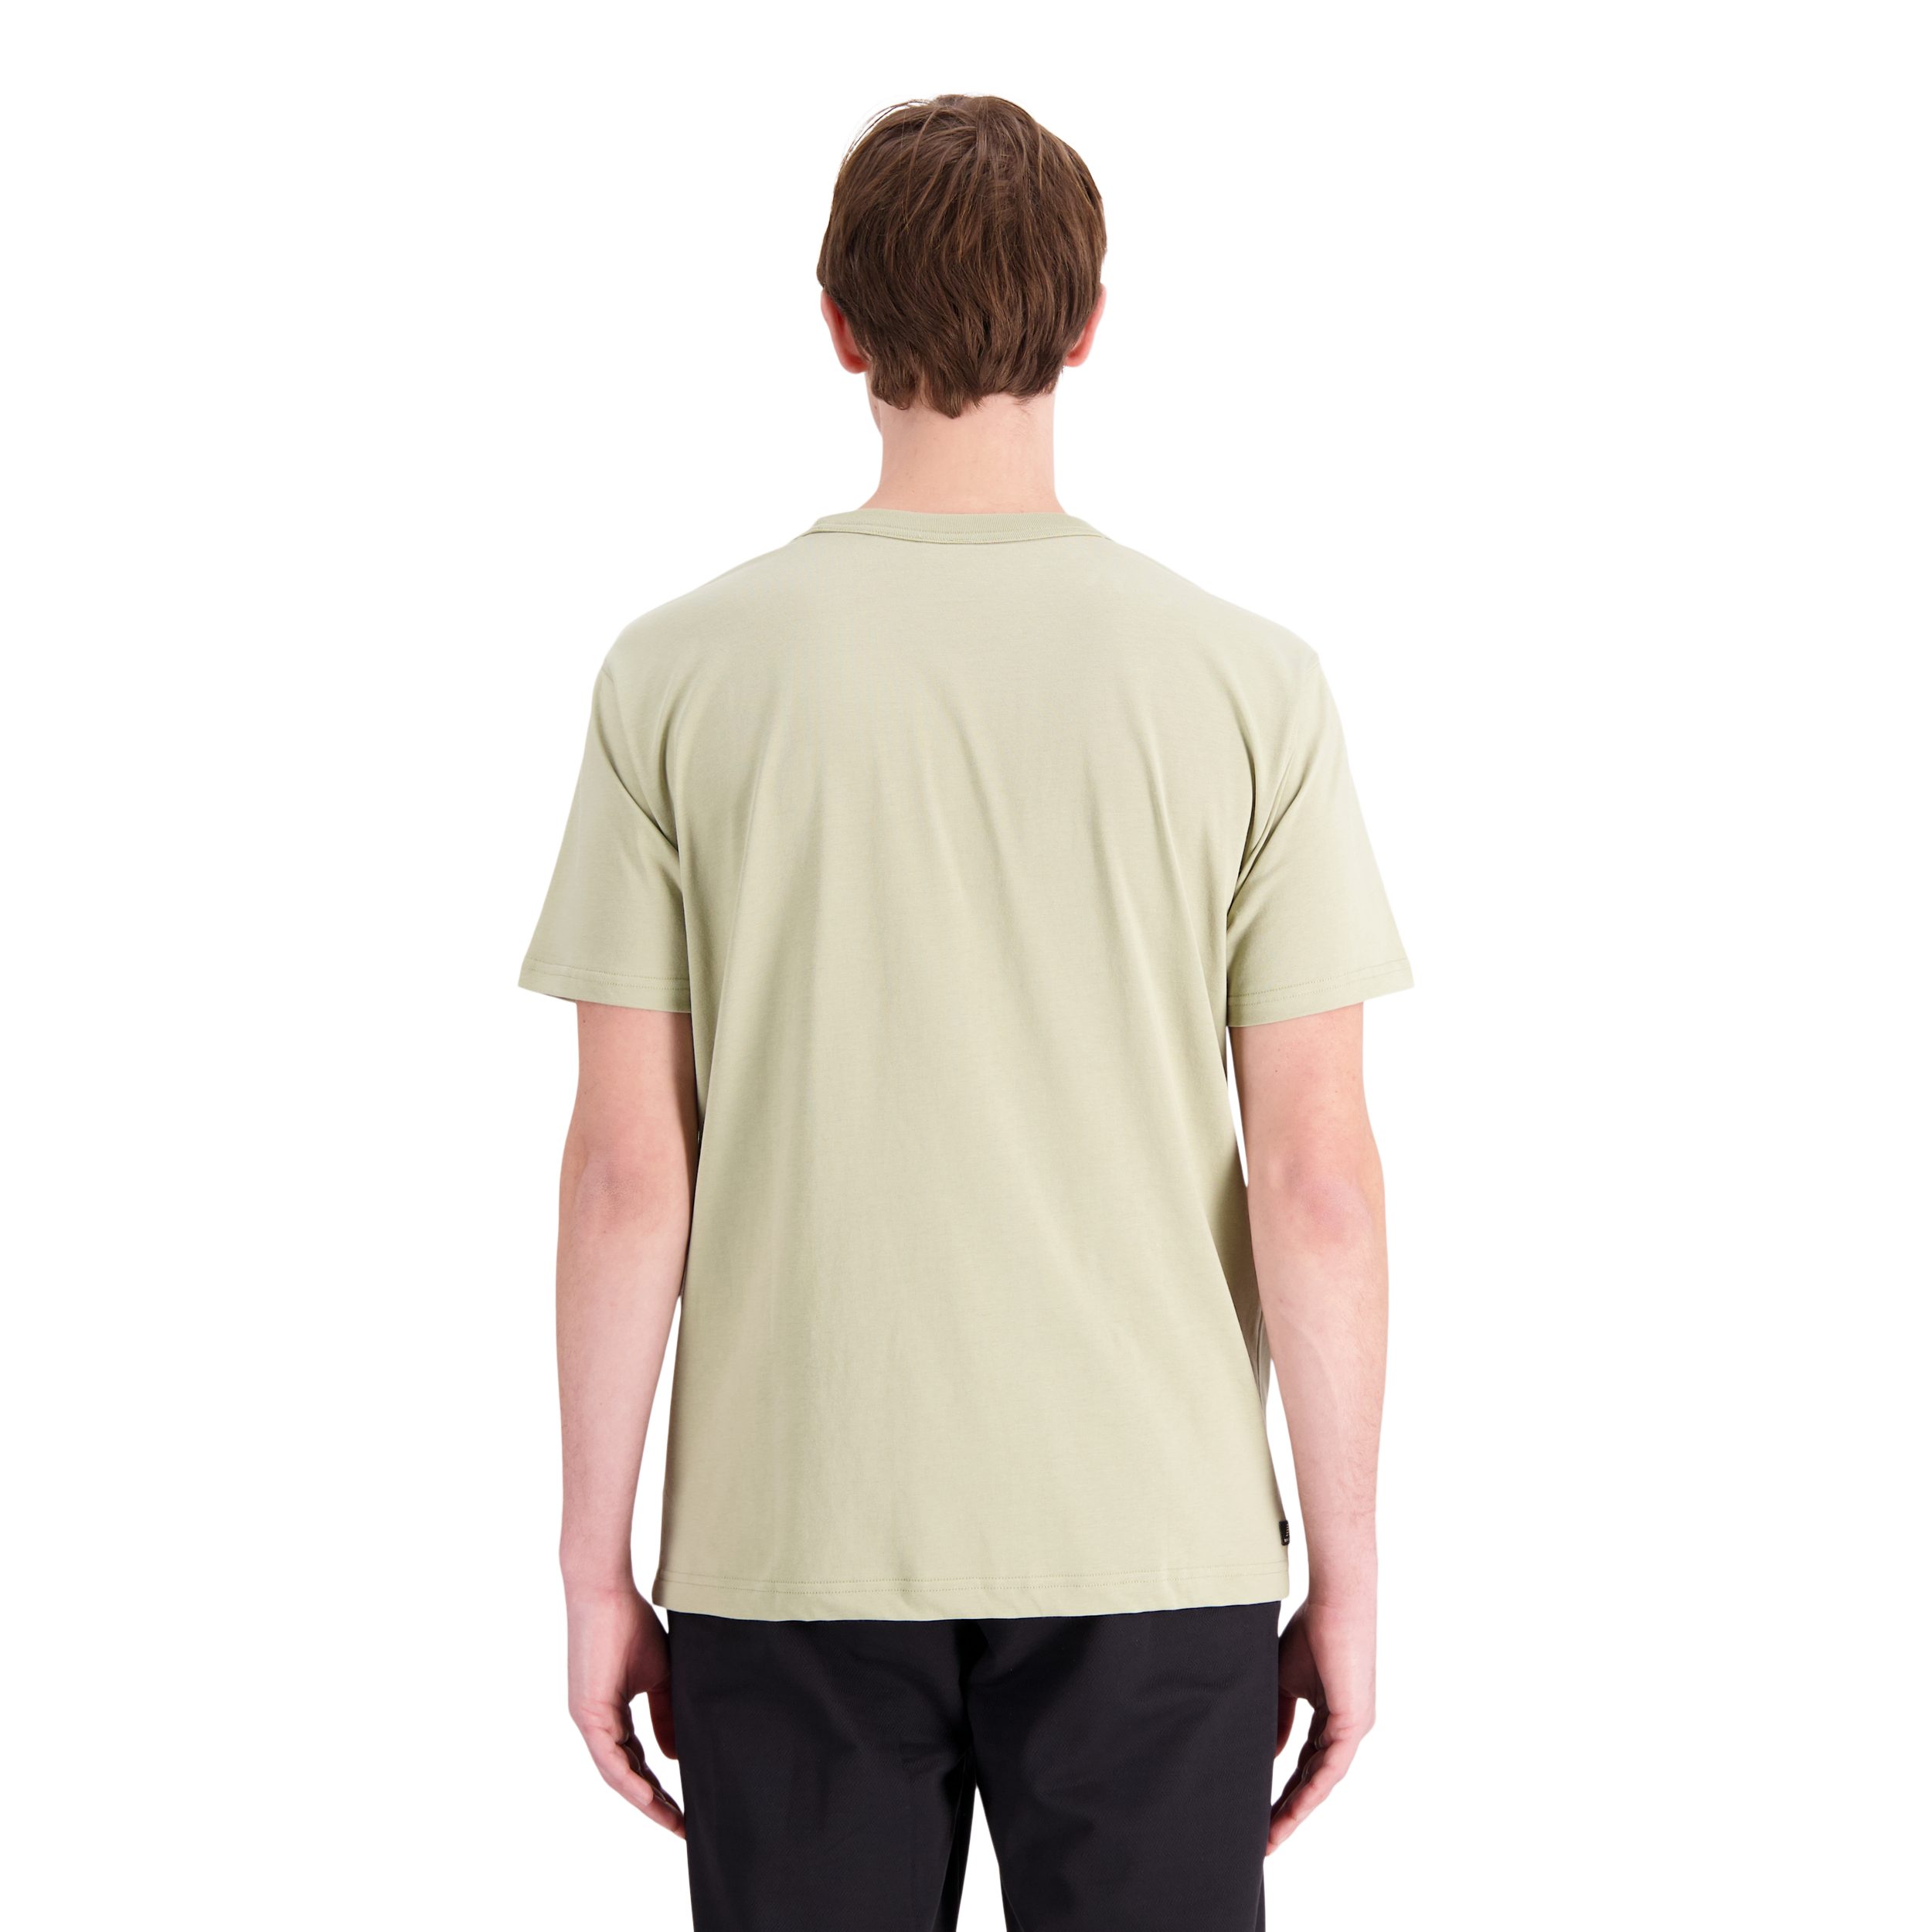 T-Shirt Balance green fatigue New